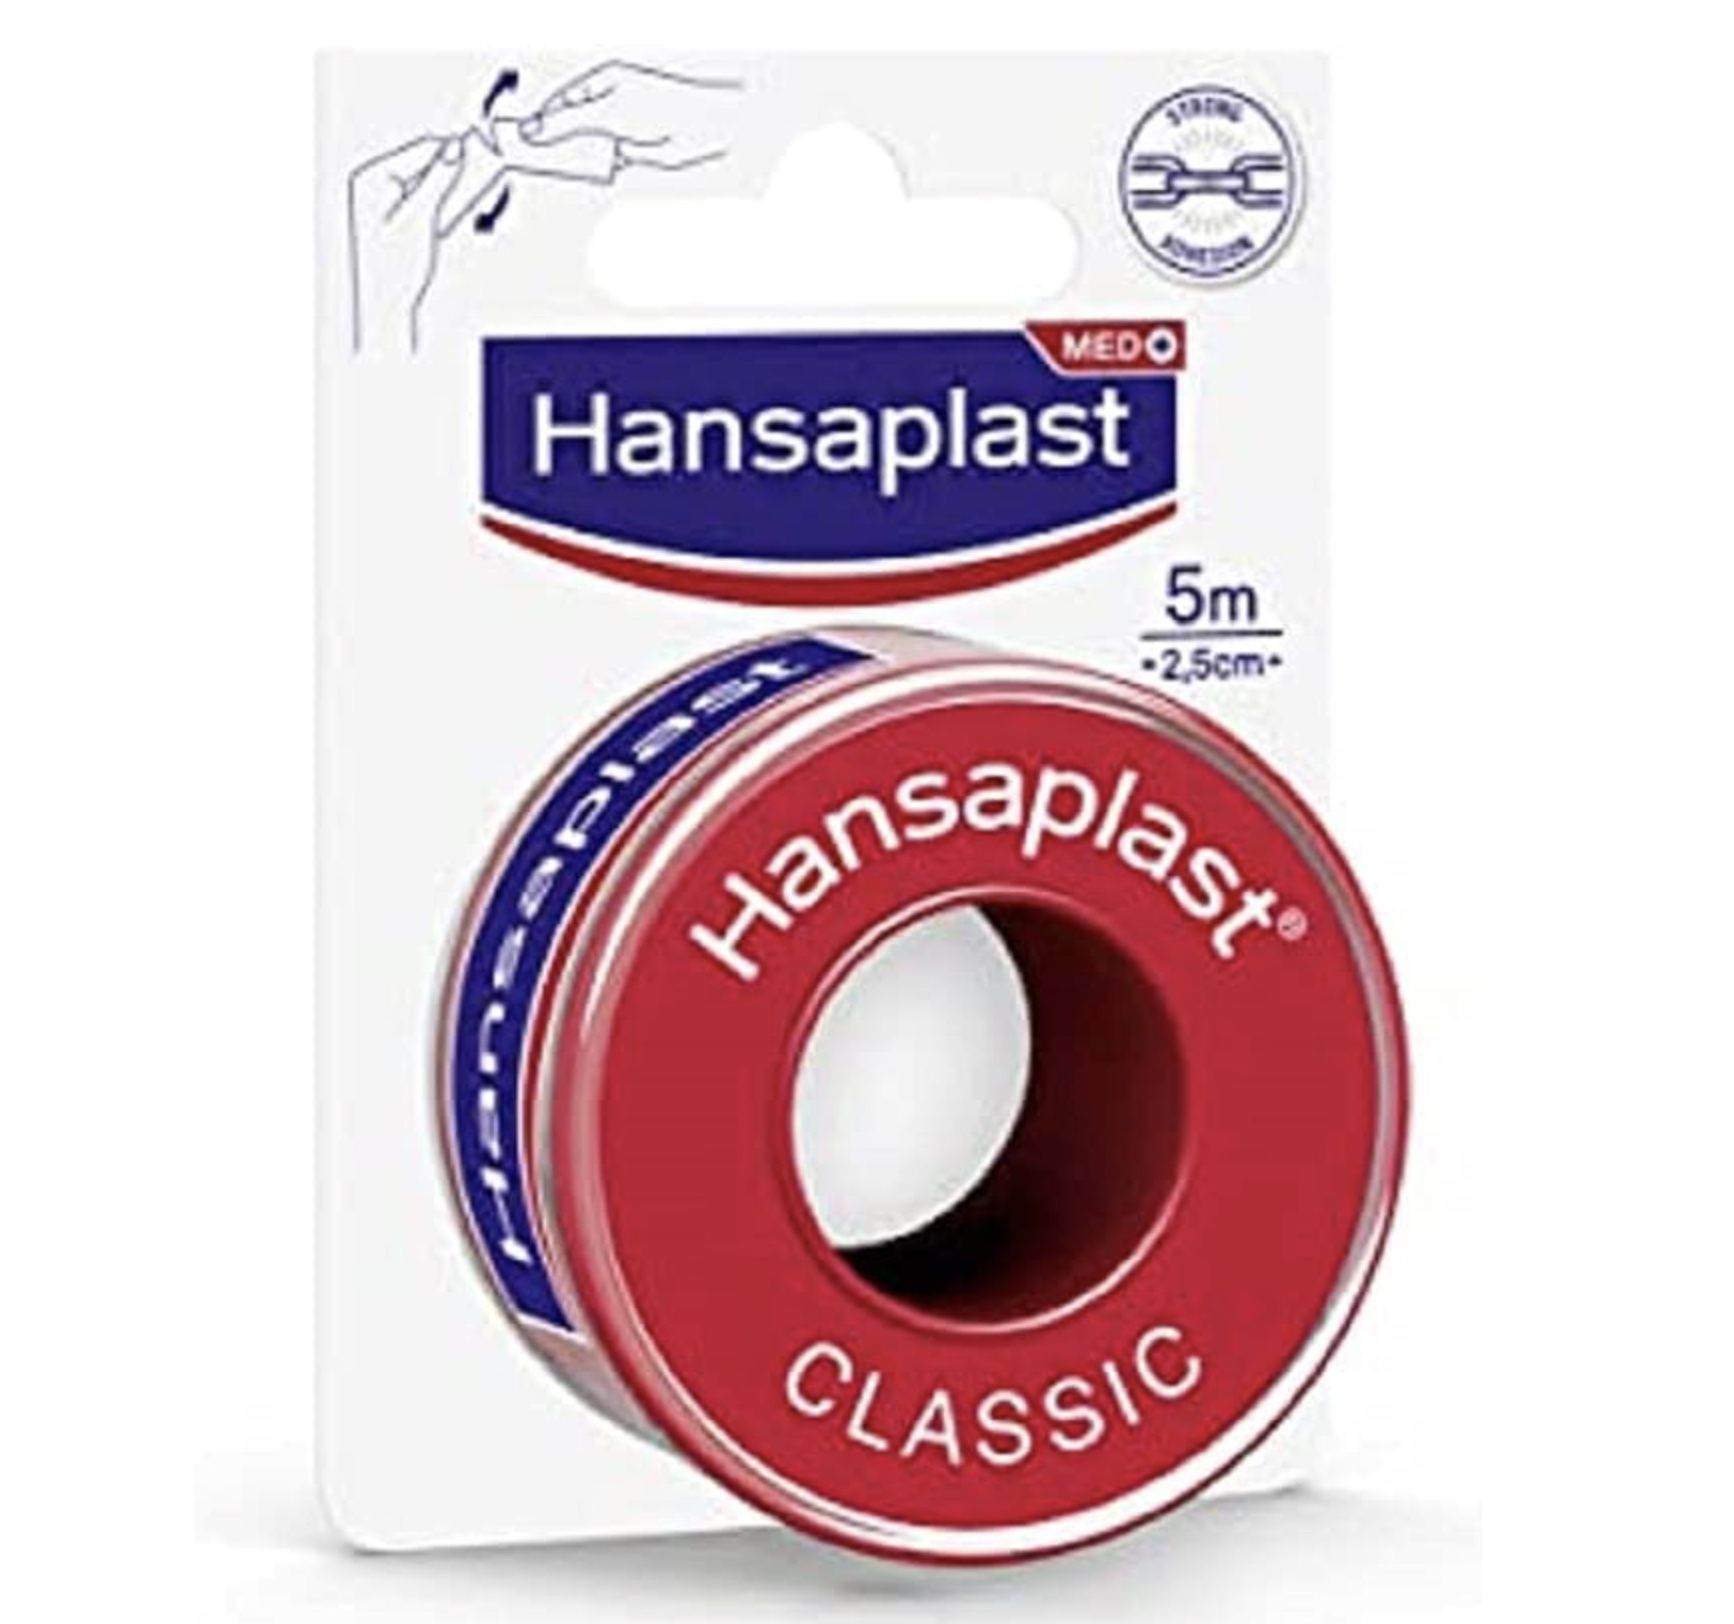 Hansaplast Fixierpflaster Classic (5 m x 2,5 cm) ab 1,61€   Prime Sparabo